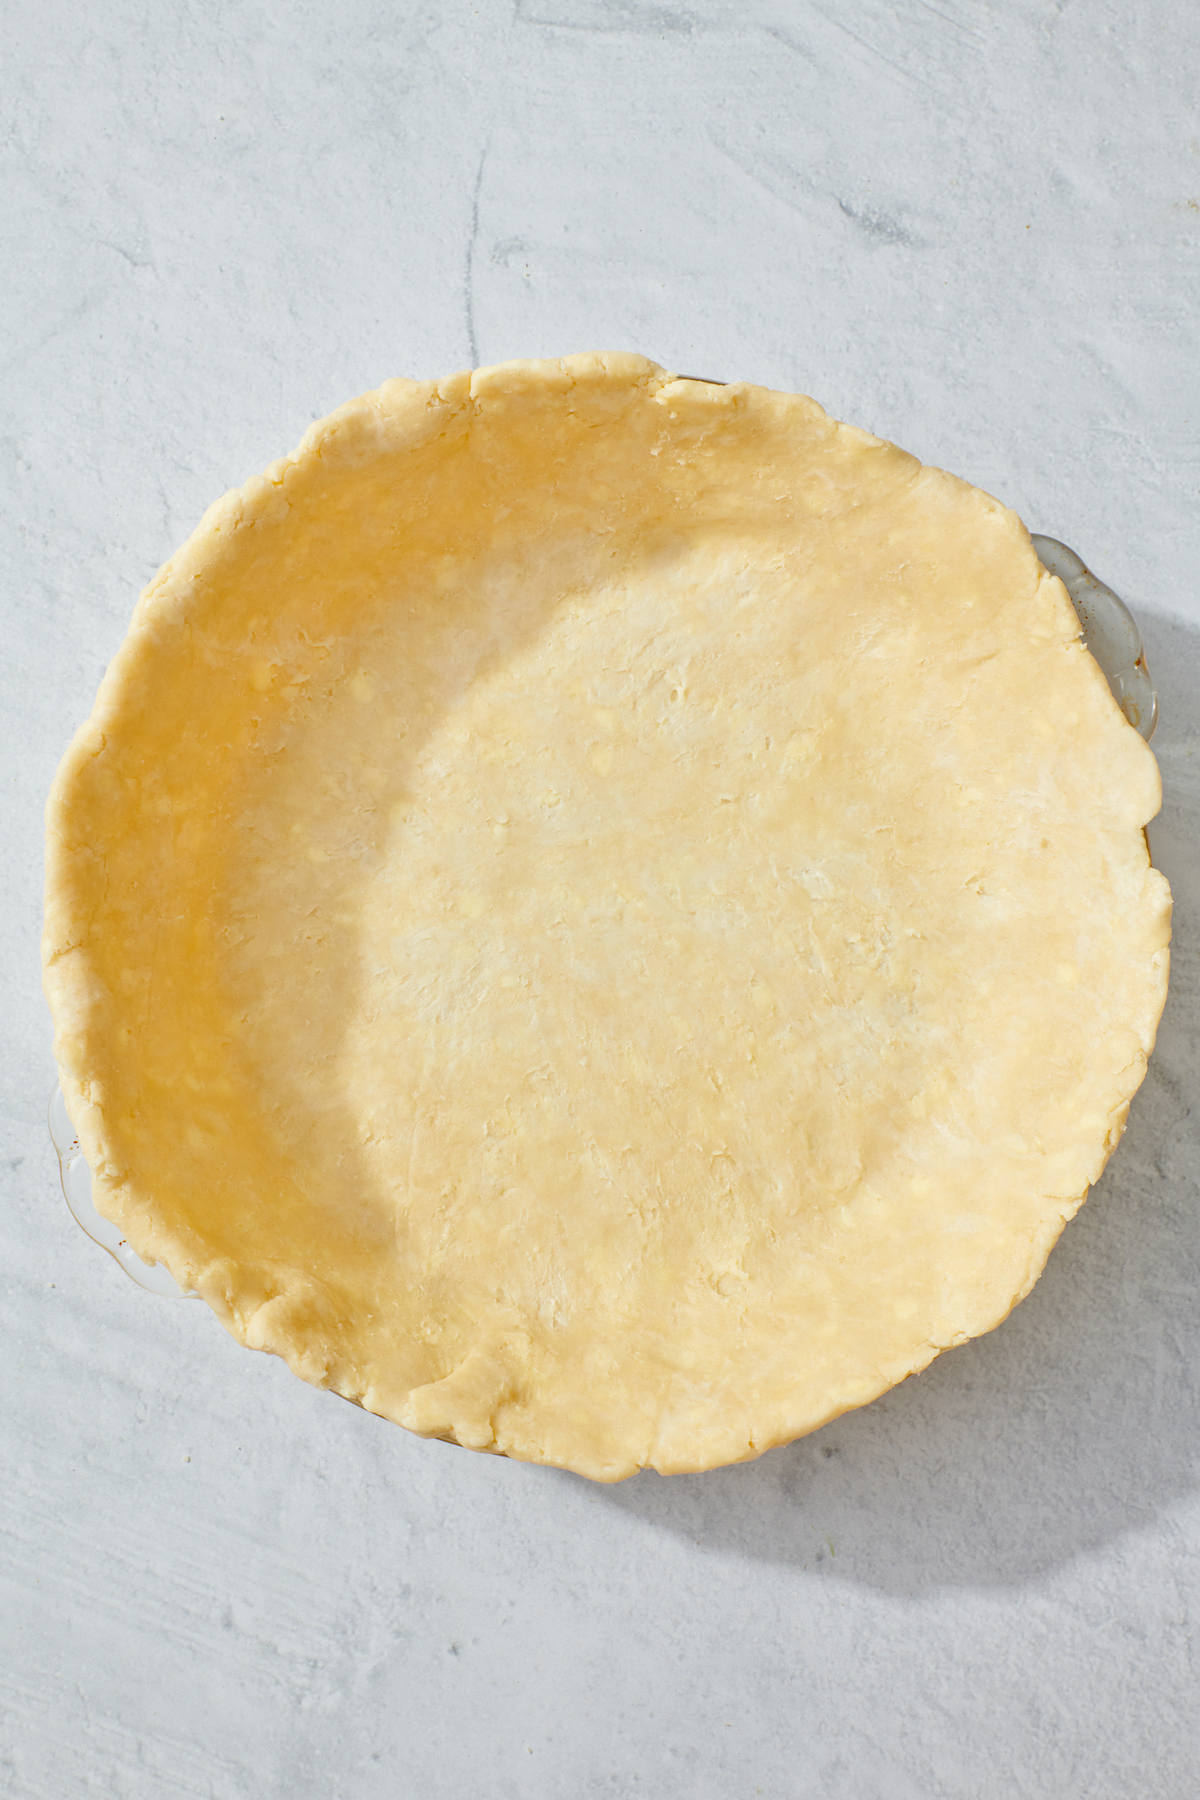 Perfect pie crust in pie dish.